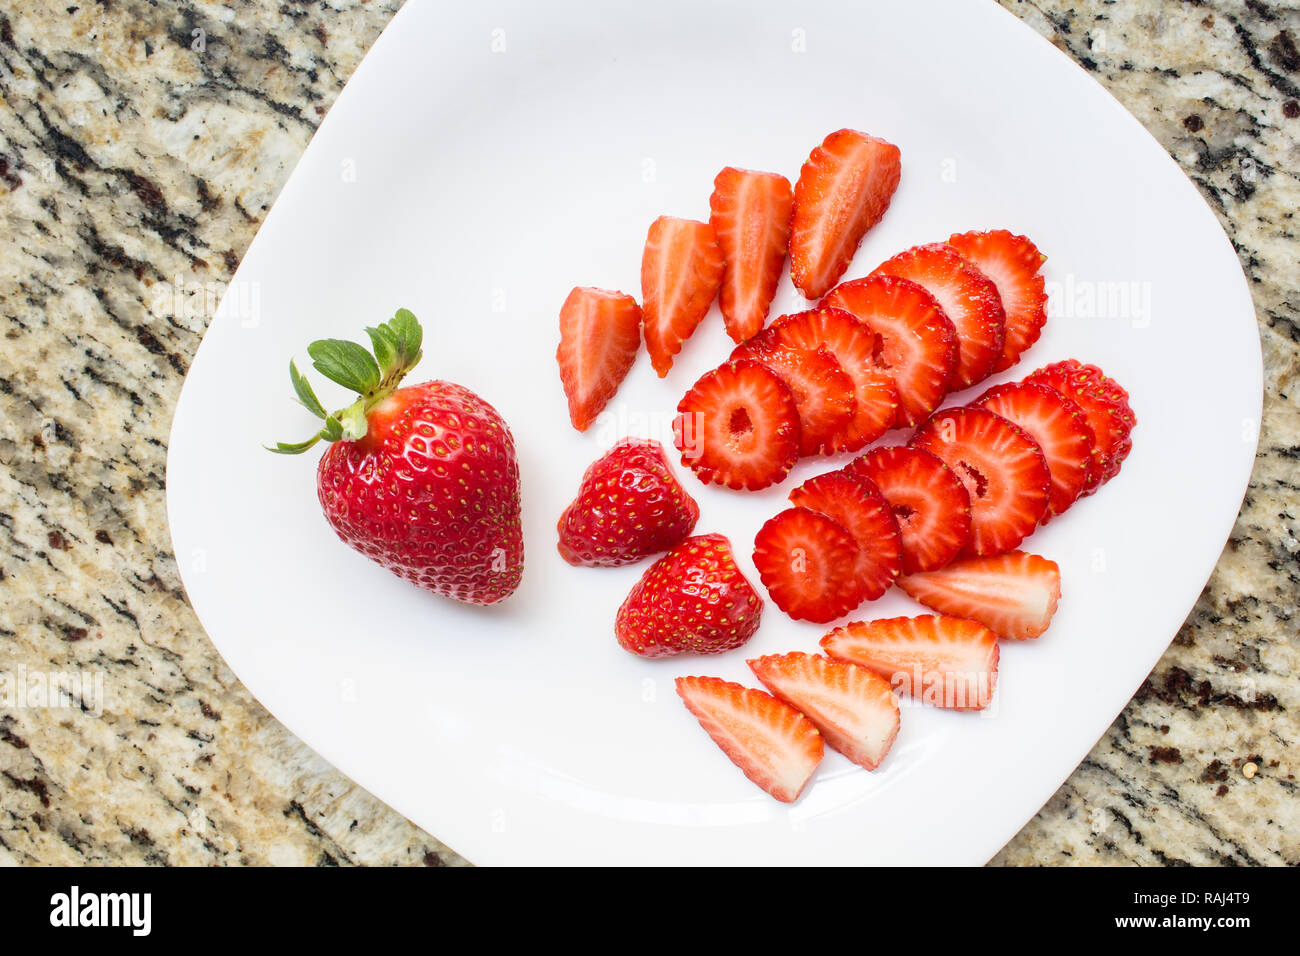 Frische Erdbeeren Schnitte auf weissen Teller, Obst lecker. Dessert gesund und reich an Vitaminen. Stockfoto